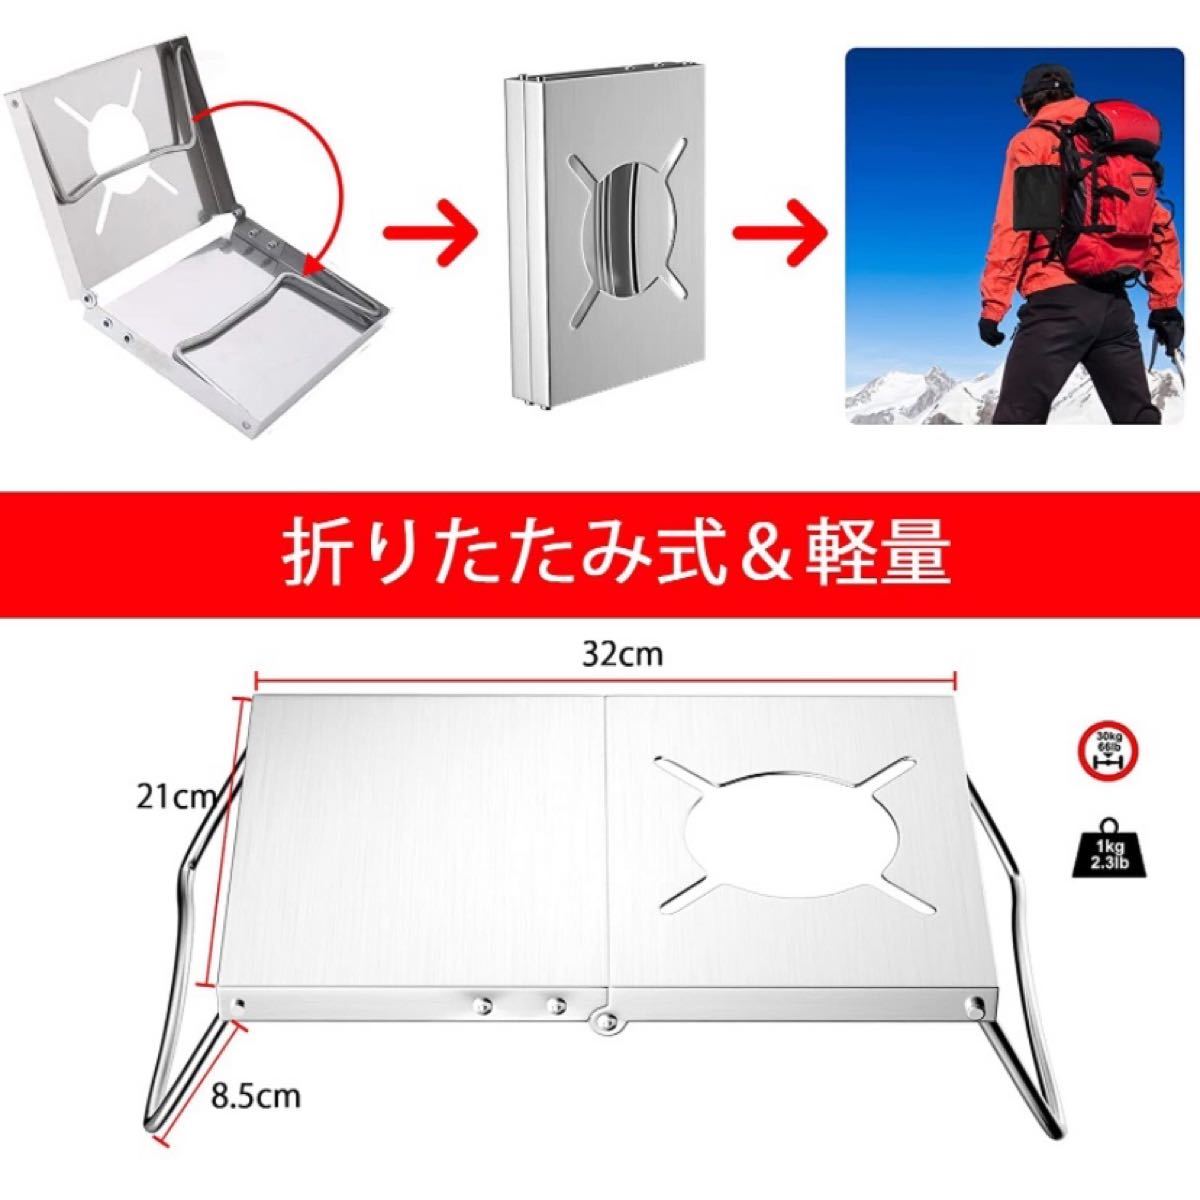 遮熱テーブル 遮熱板【2021年最新版 ポケットストーブ付き】3種類バーナー対応 収納袋付き 日本語説明書付き